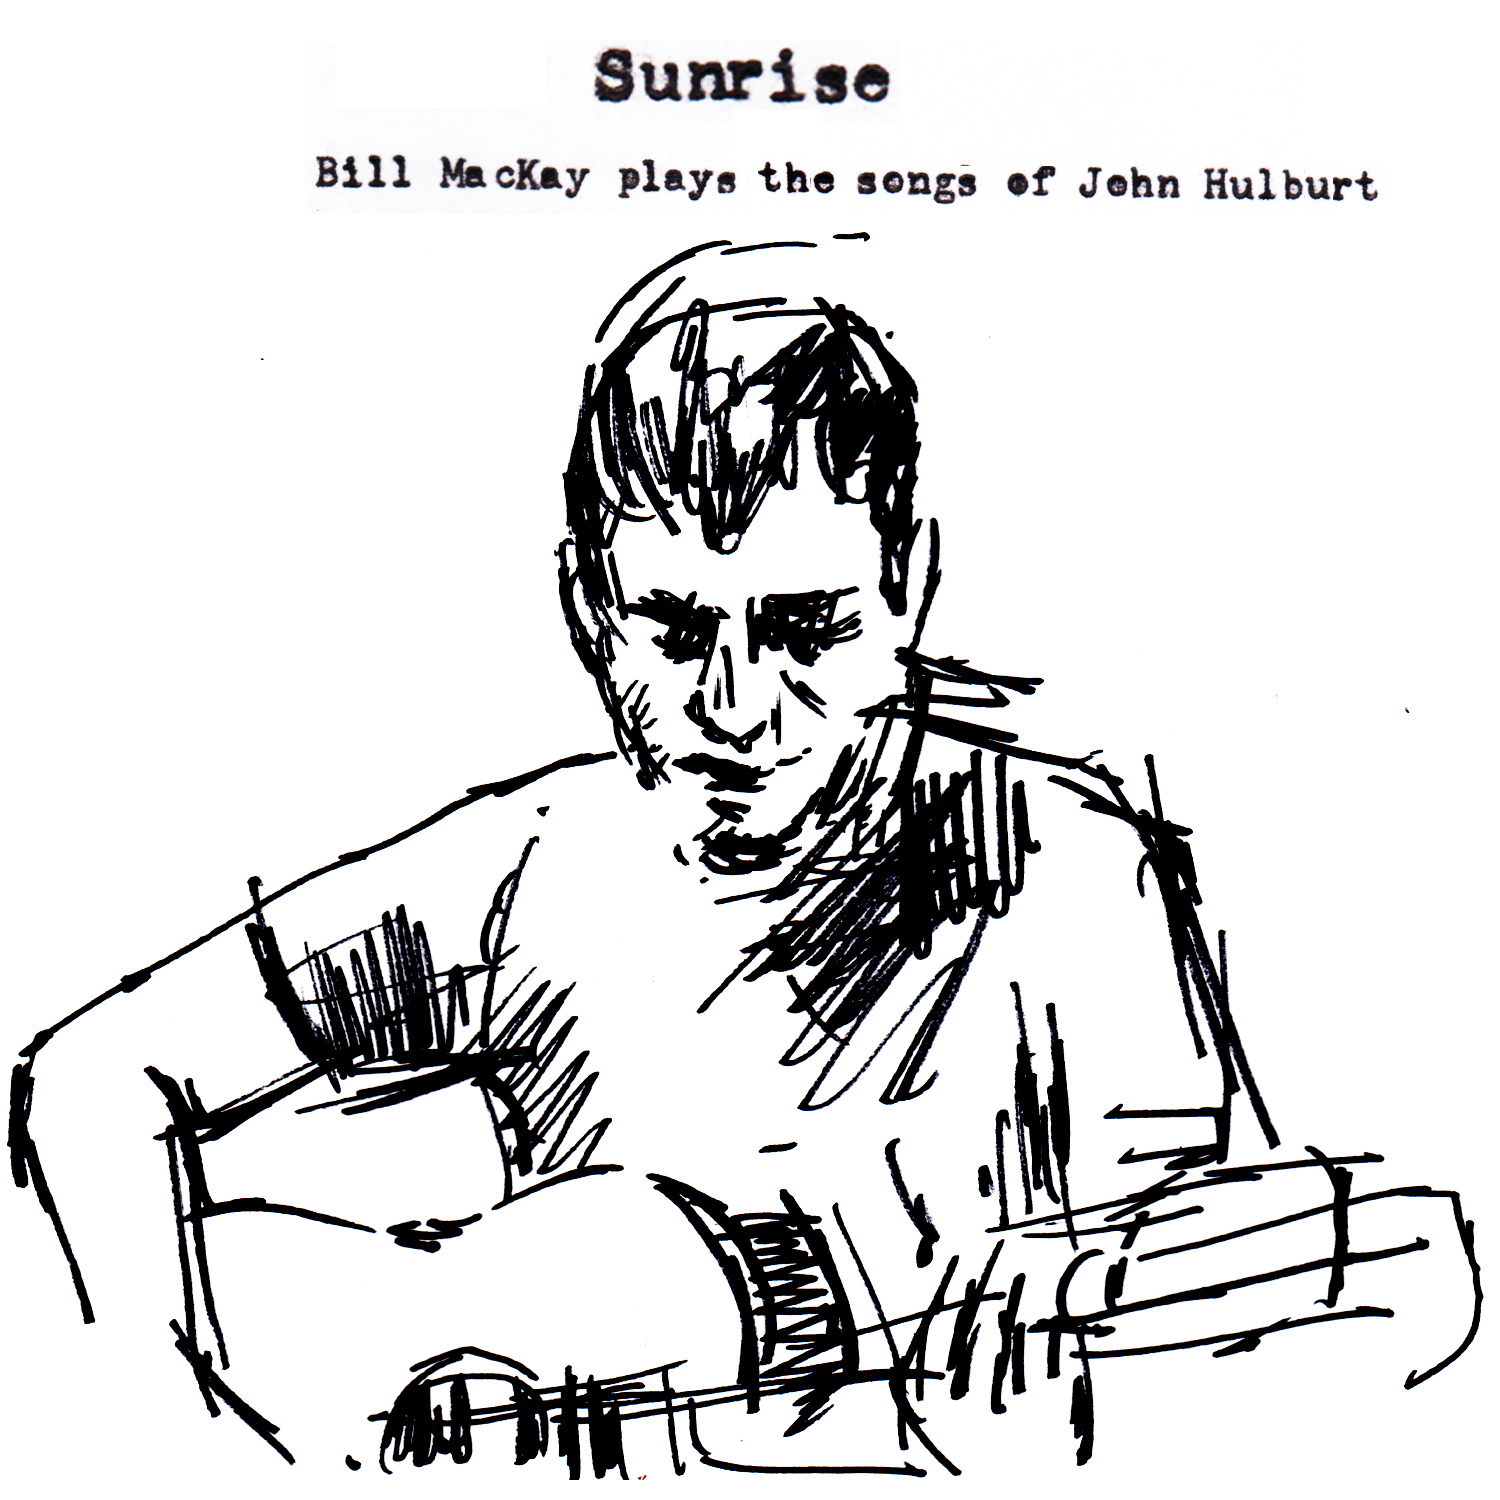 BILL MACKAY - Sunrise : Bill MacKay Plays The Songs of John Hulburt cover 